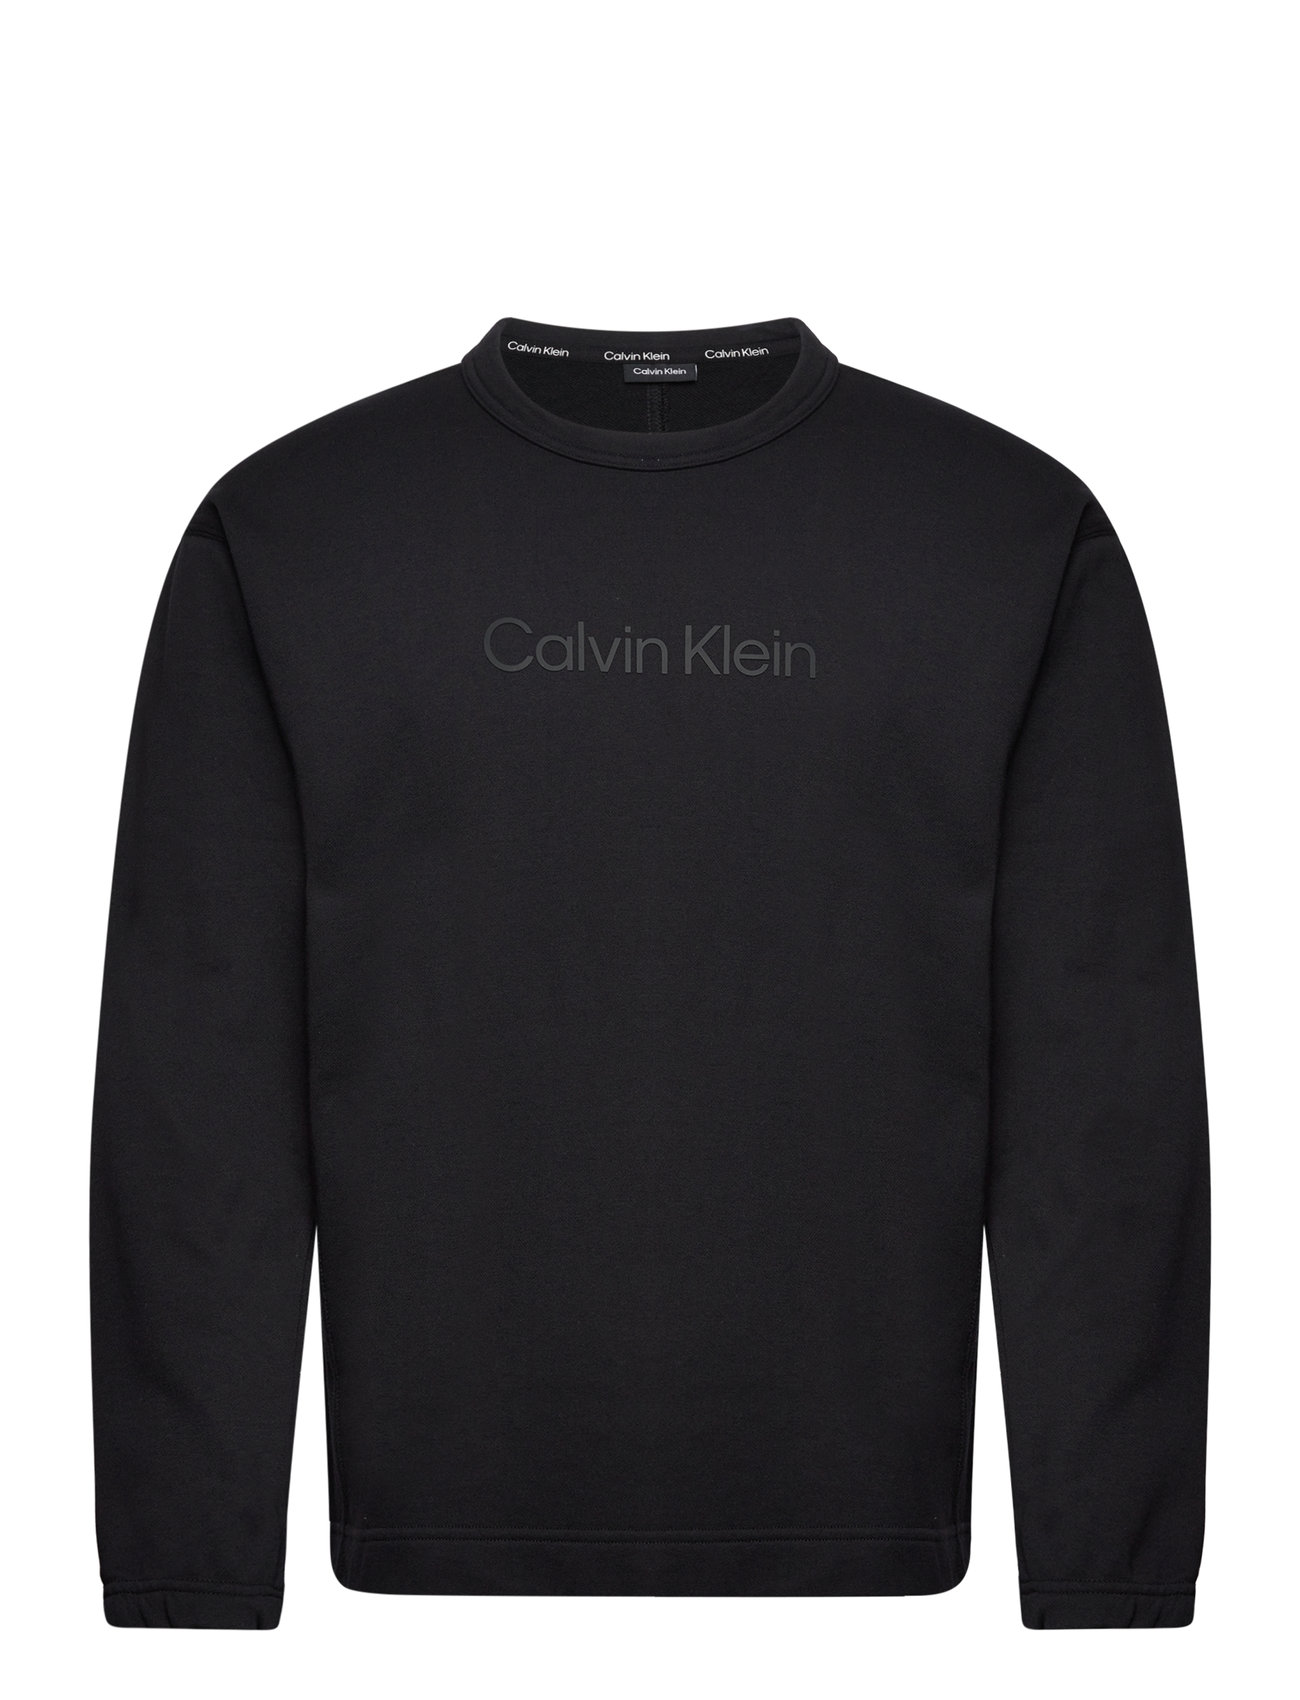 Pullover einkaufen Calvin & bei – - kapuzenpullover Klein – Pw sweatshirts Performance Booztlet